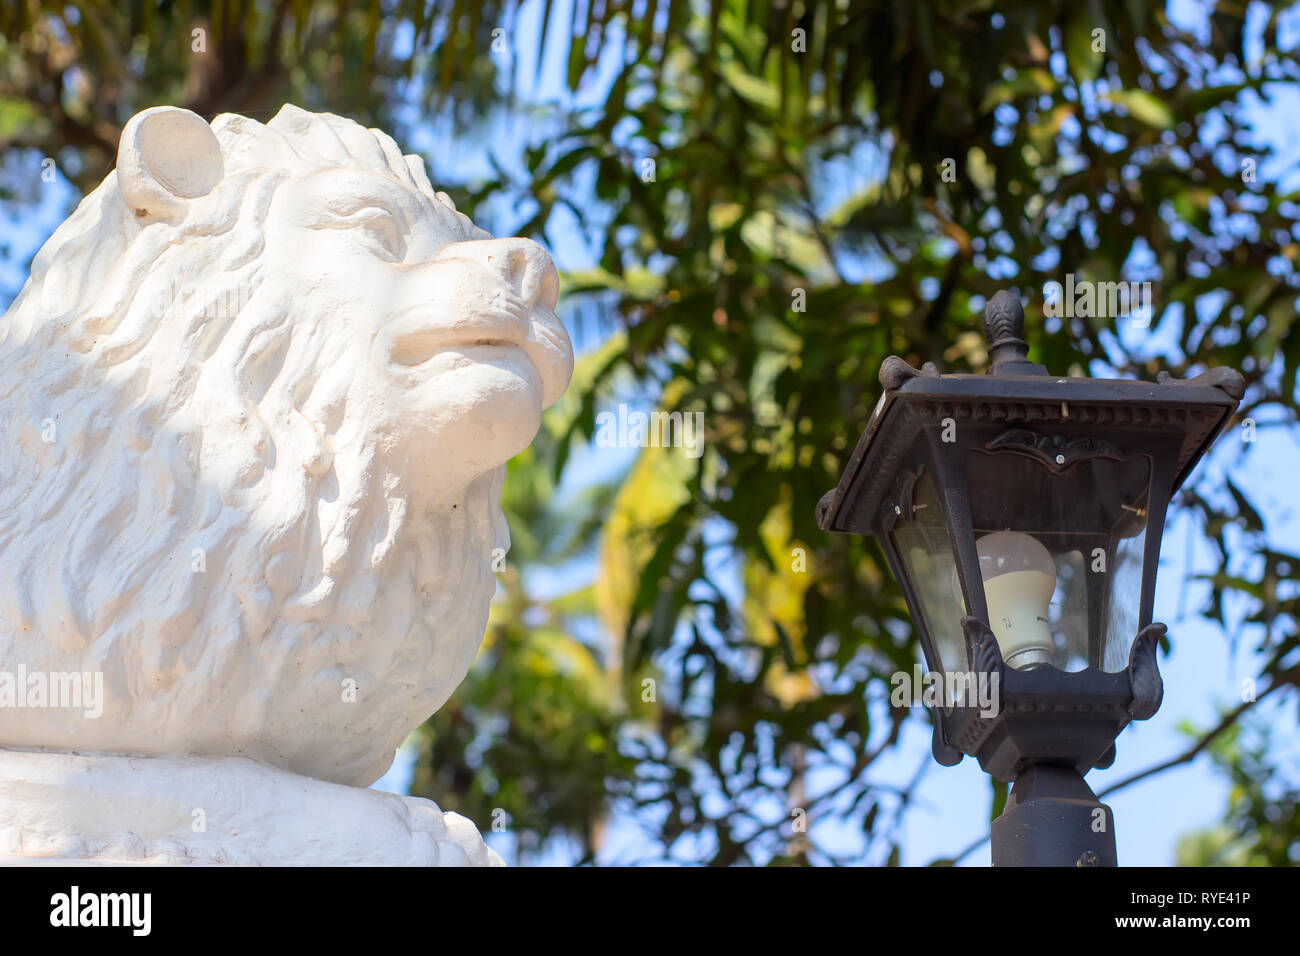 La sculpture du lion dans le parc est gardé par une lanterne Banque D'Images